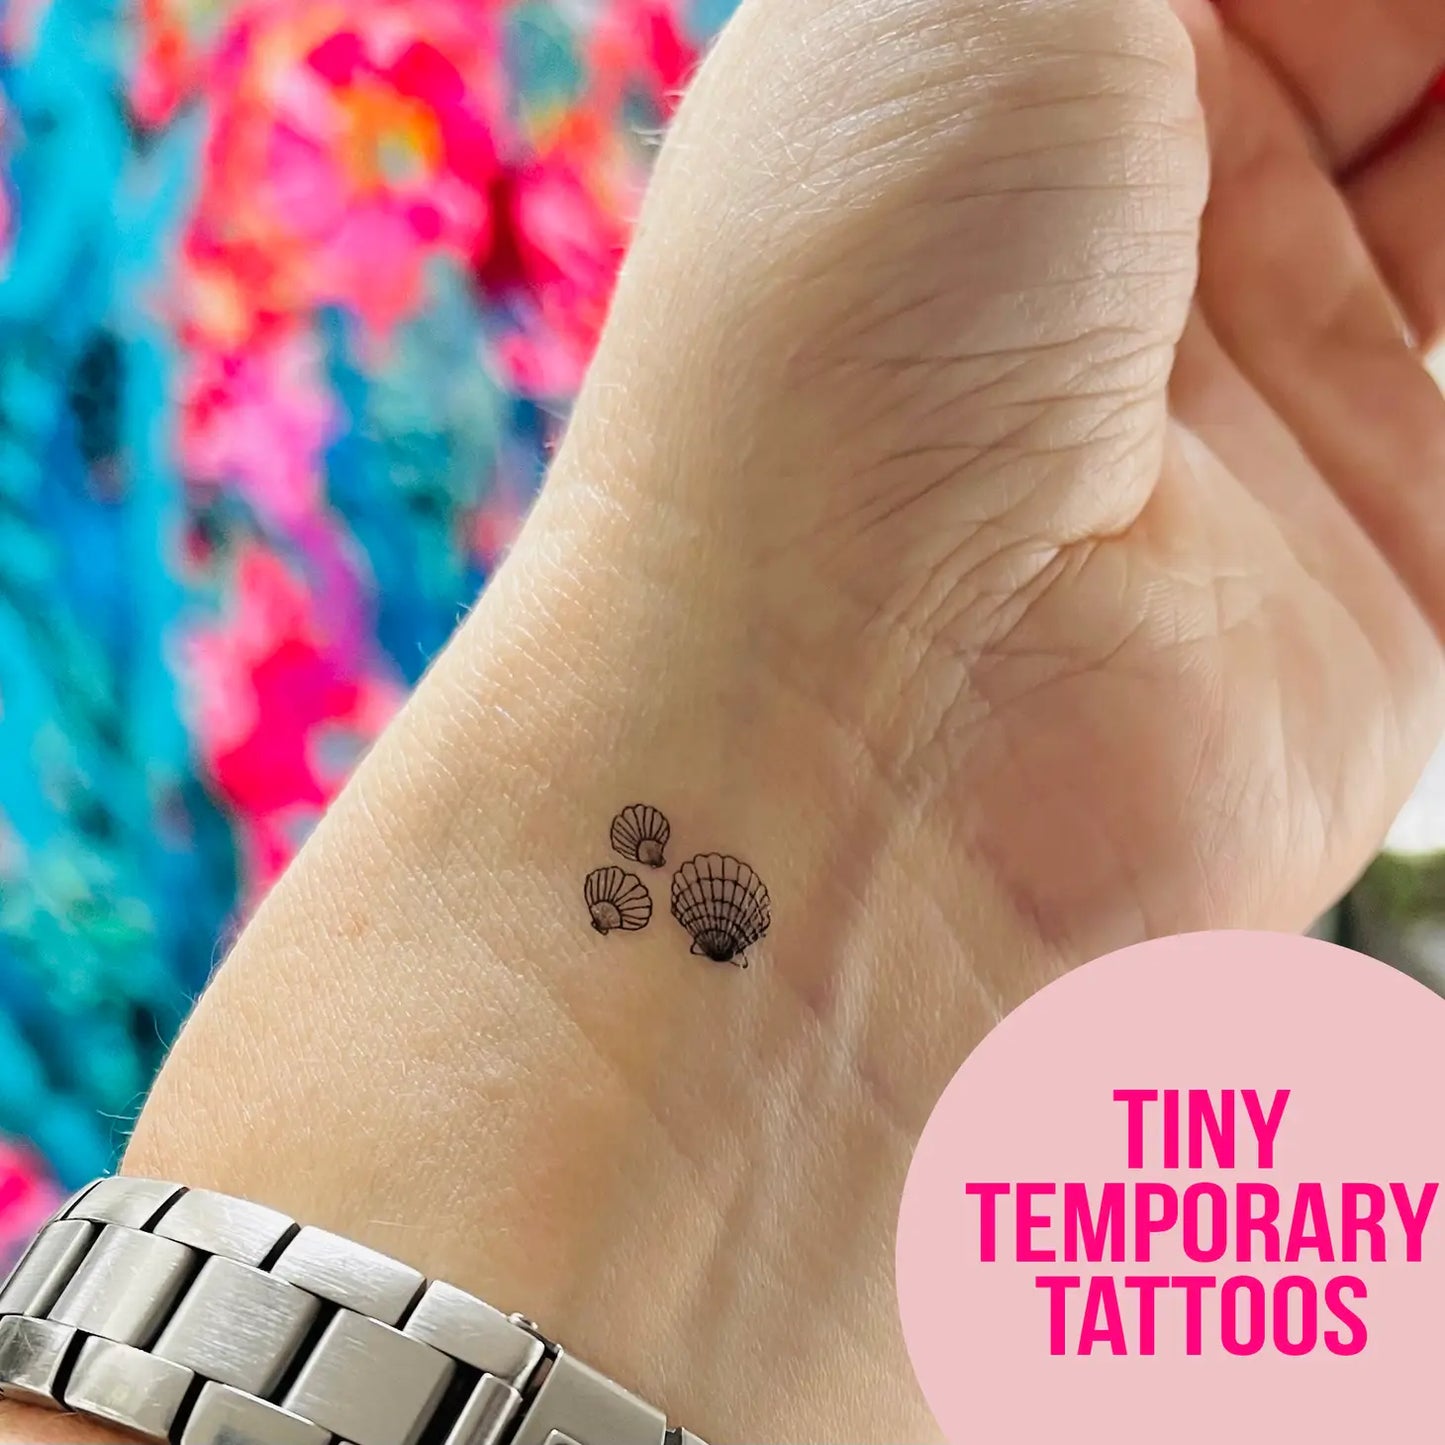 You'Re a star - Temporary Tattoos